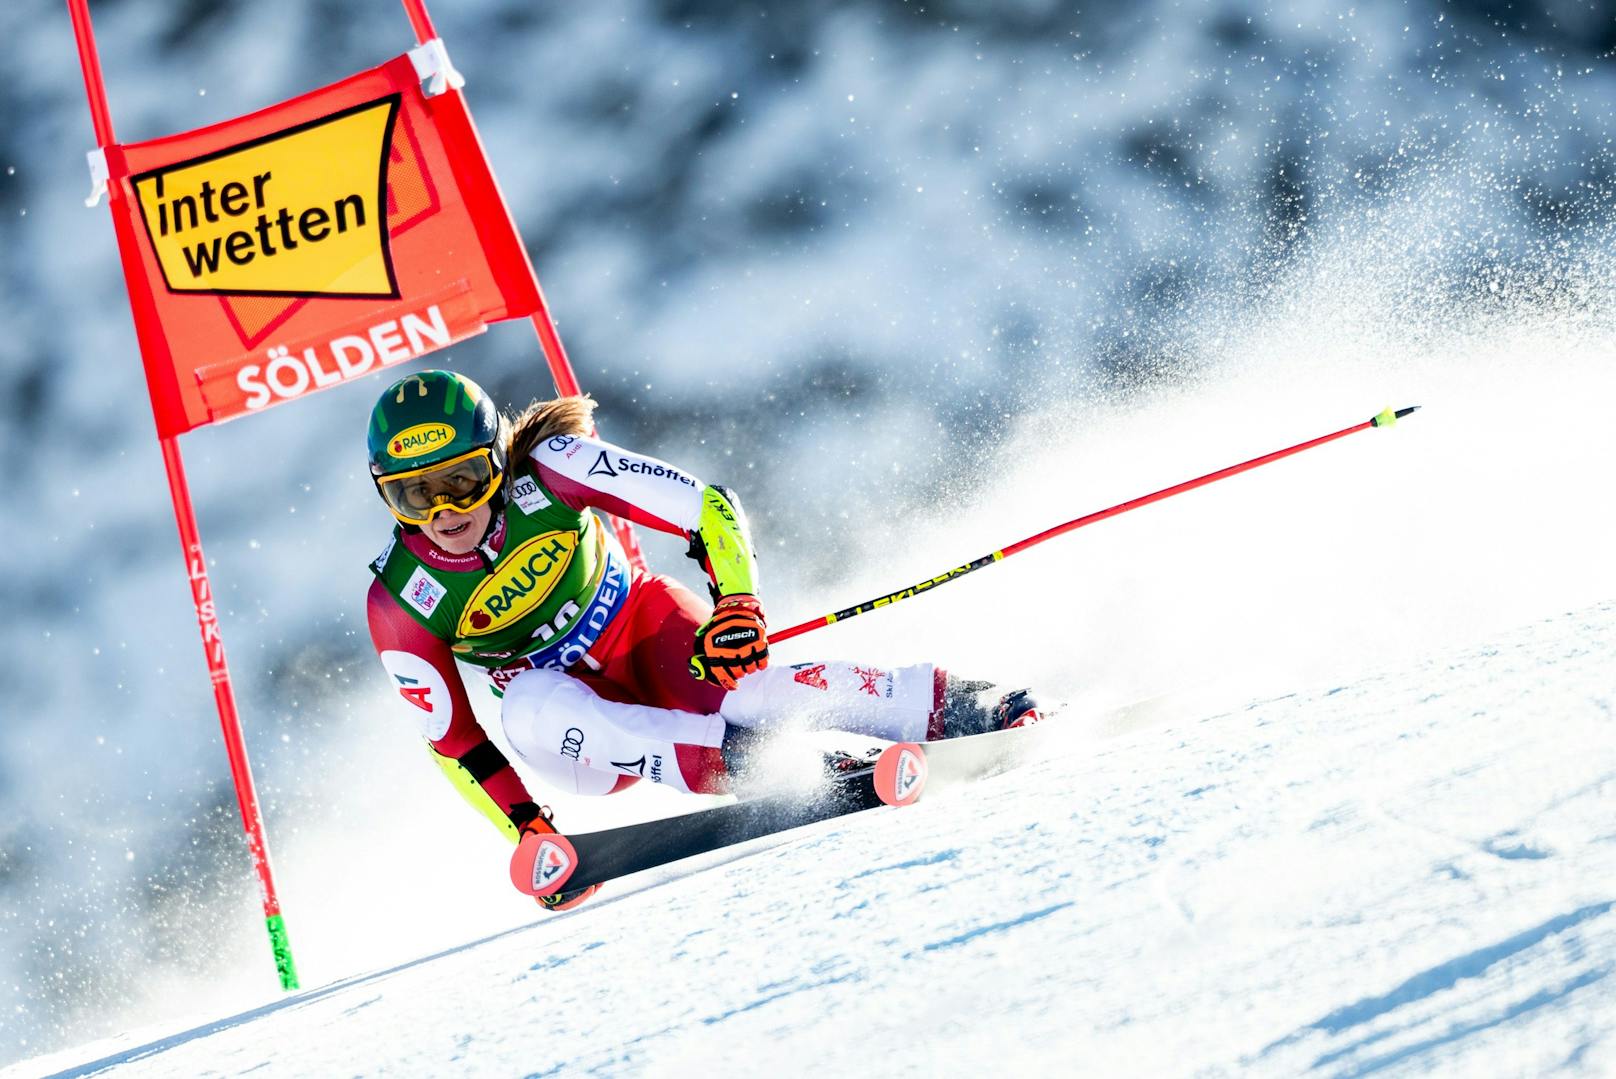 Die Damen konnten in Sölden, anders als die Herren, in die Saison starten. Die ÖSV-Stars überzeugten im ersten Rennen des Winters nicht, Franziska Gritsch fuhr auf den zehnten Platz. Den Sieg sicherte sich die Schweizerin Lara Gut-Behrami.